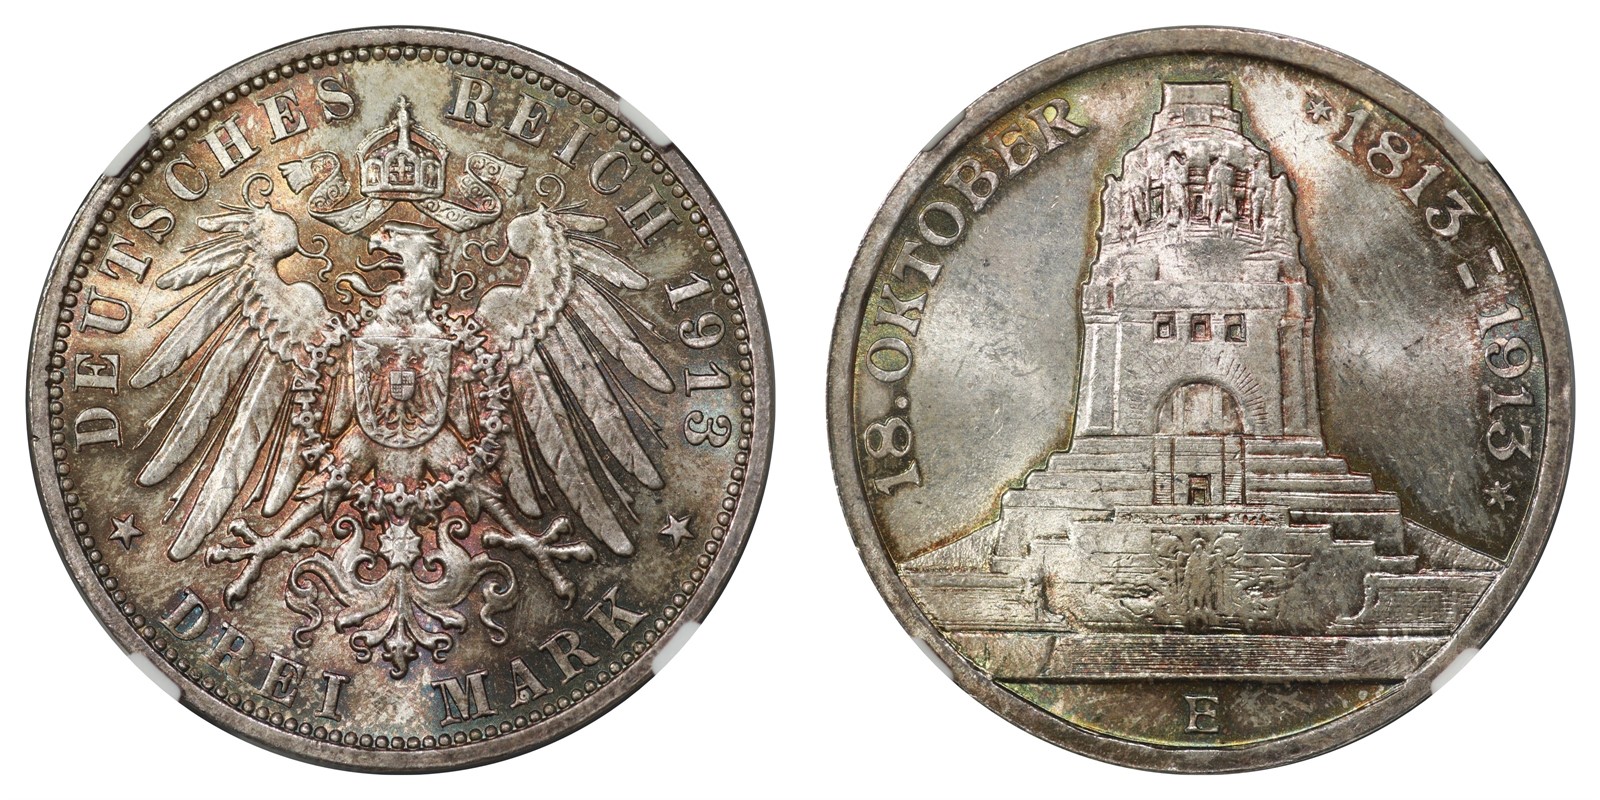 Germany - Saxony - 3 Mark 1913 E - NGC MS64 *